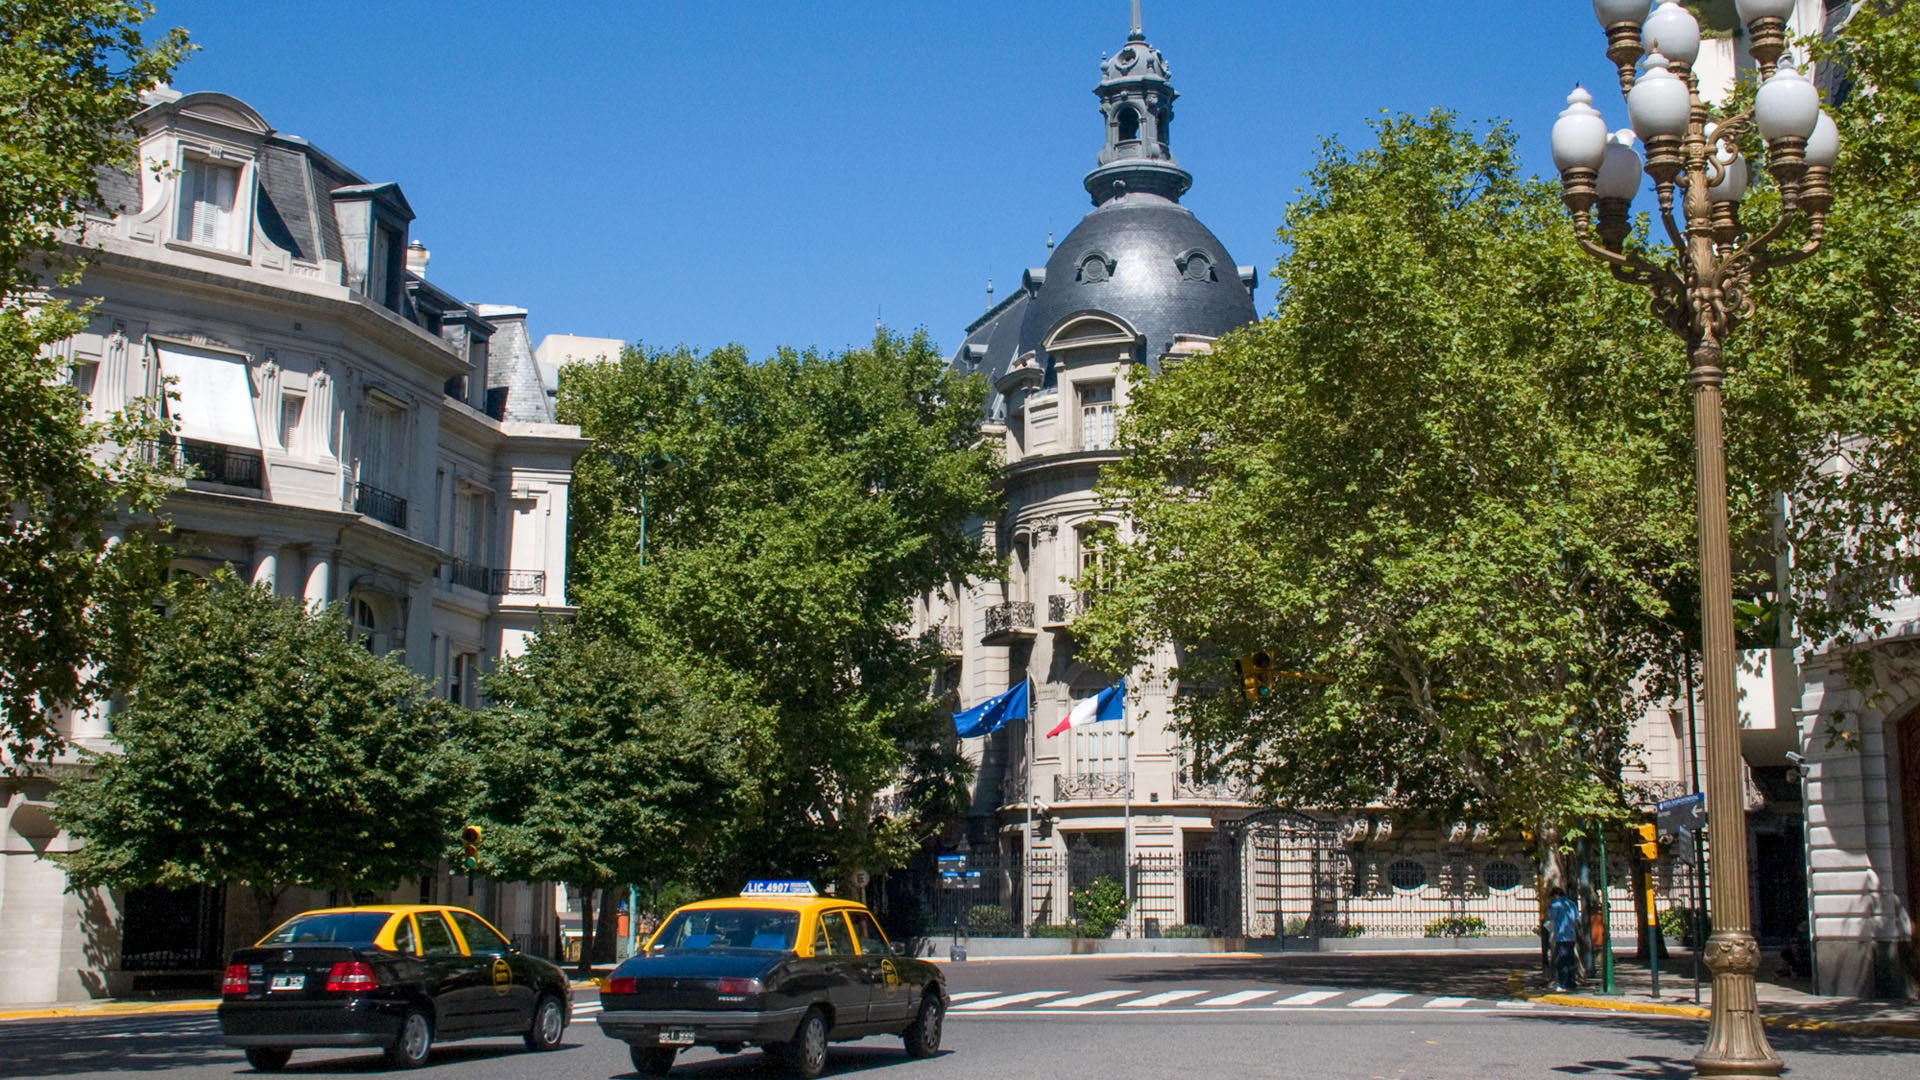 Roteiros de passeios em Buenos Aires: Recoleta